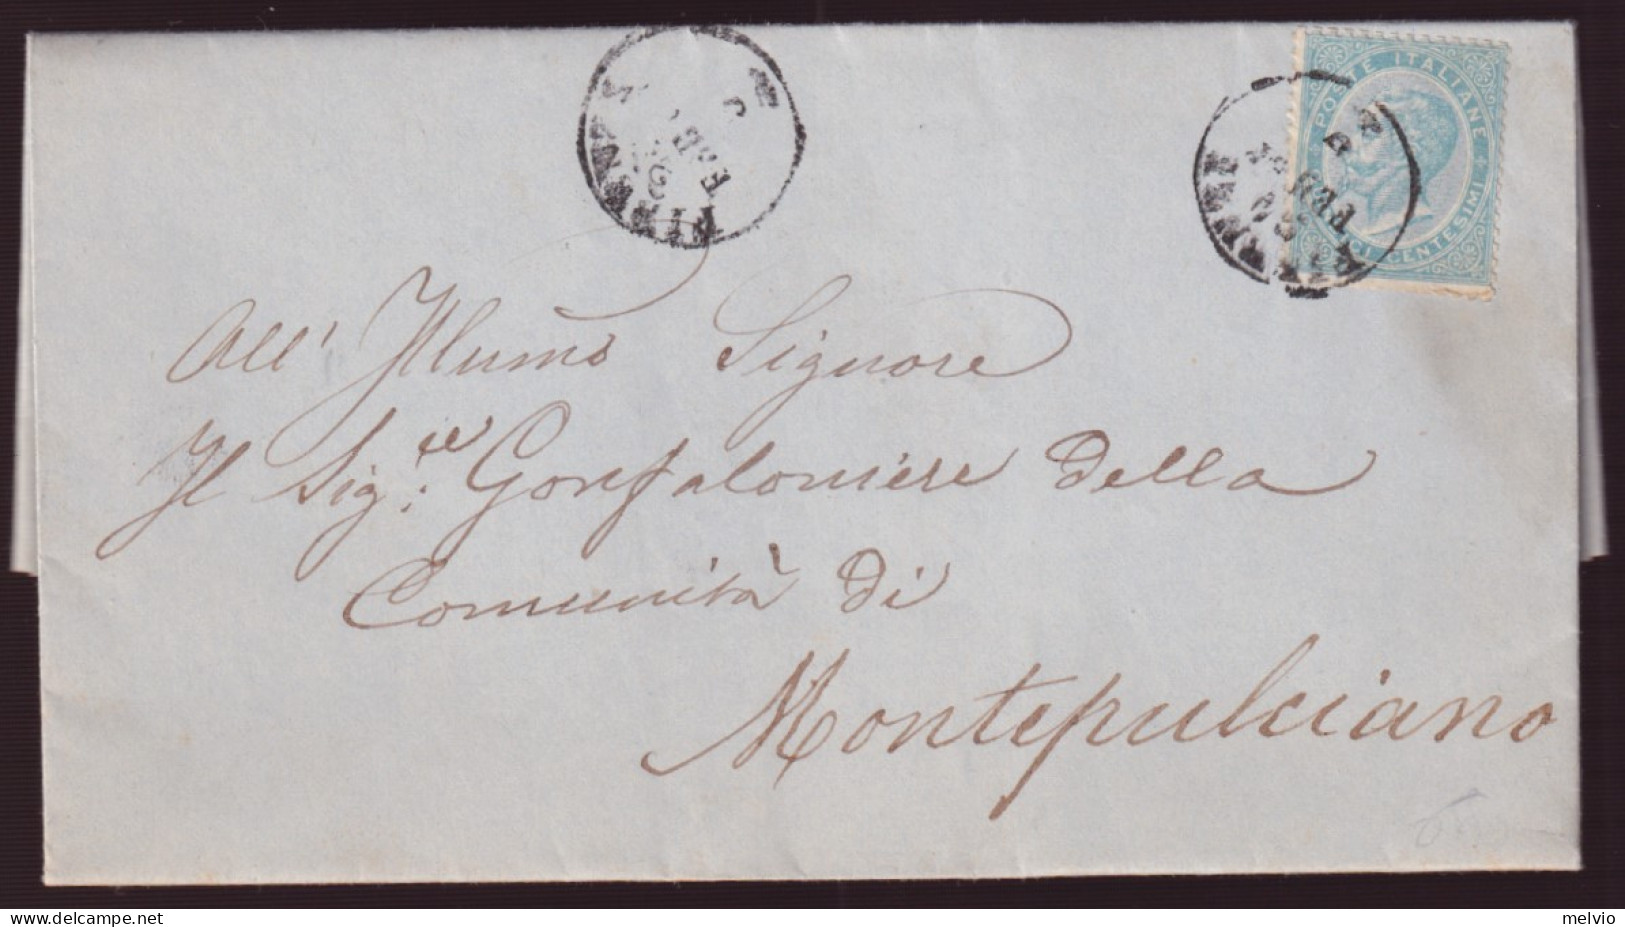 1864-effigie C.15 Tiratura Di Londra (L18) Isolato Su Lettera Completa Testo Fir - Poststempel